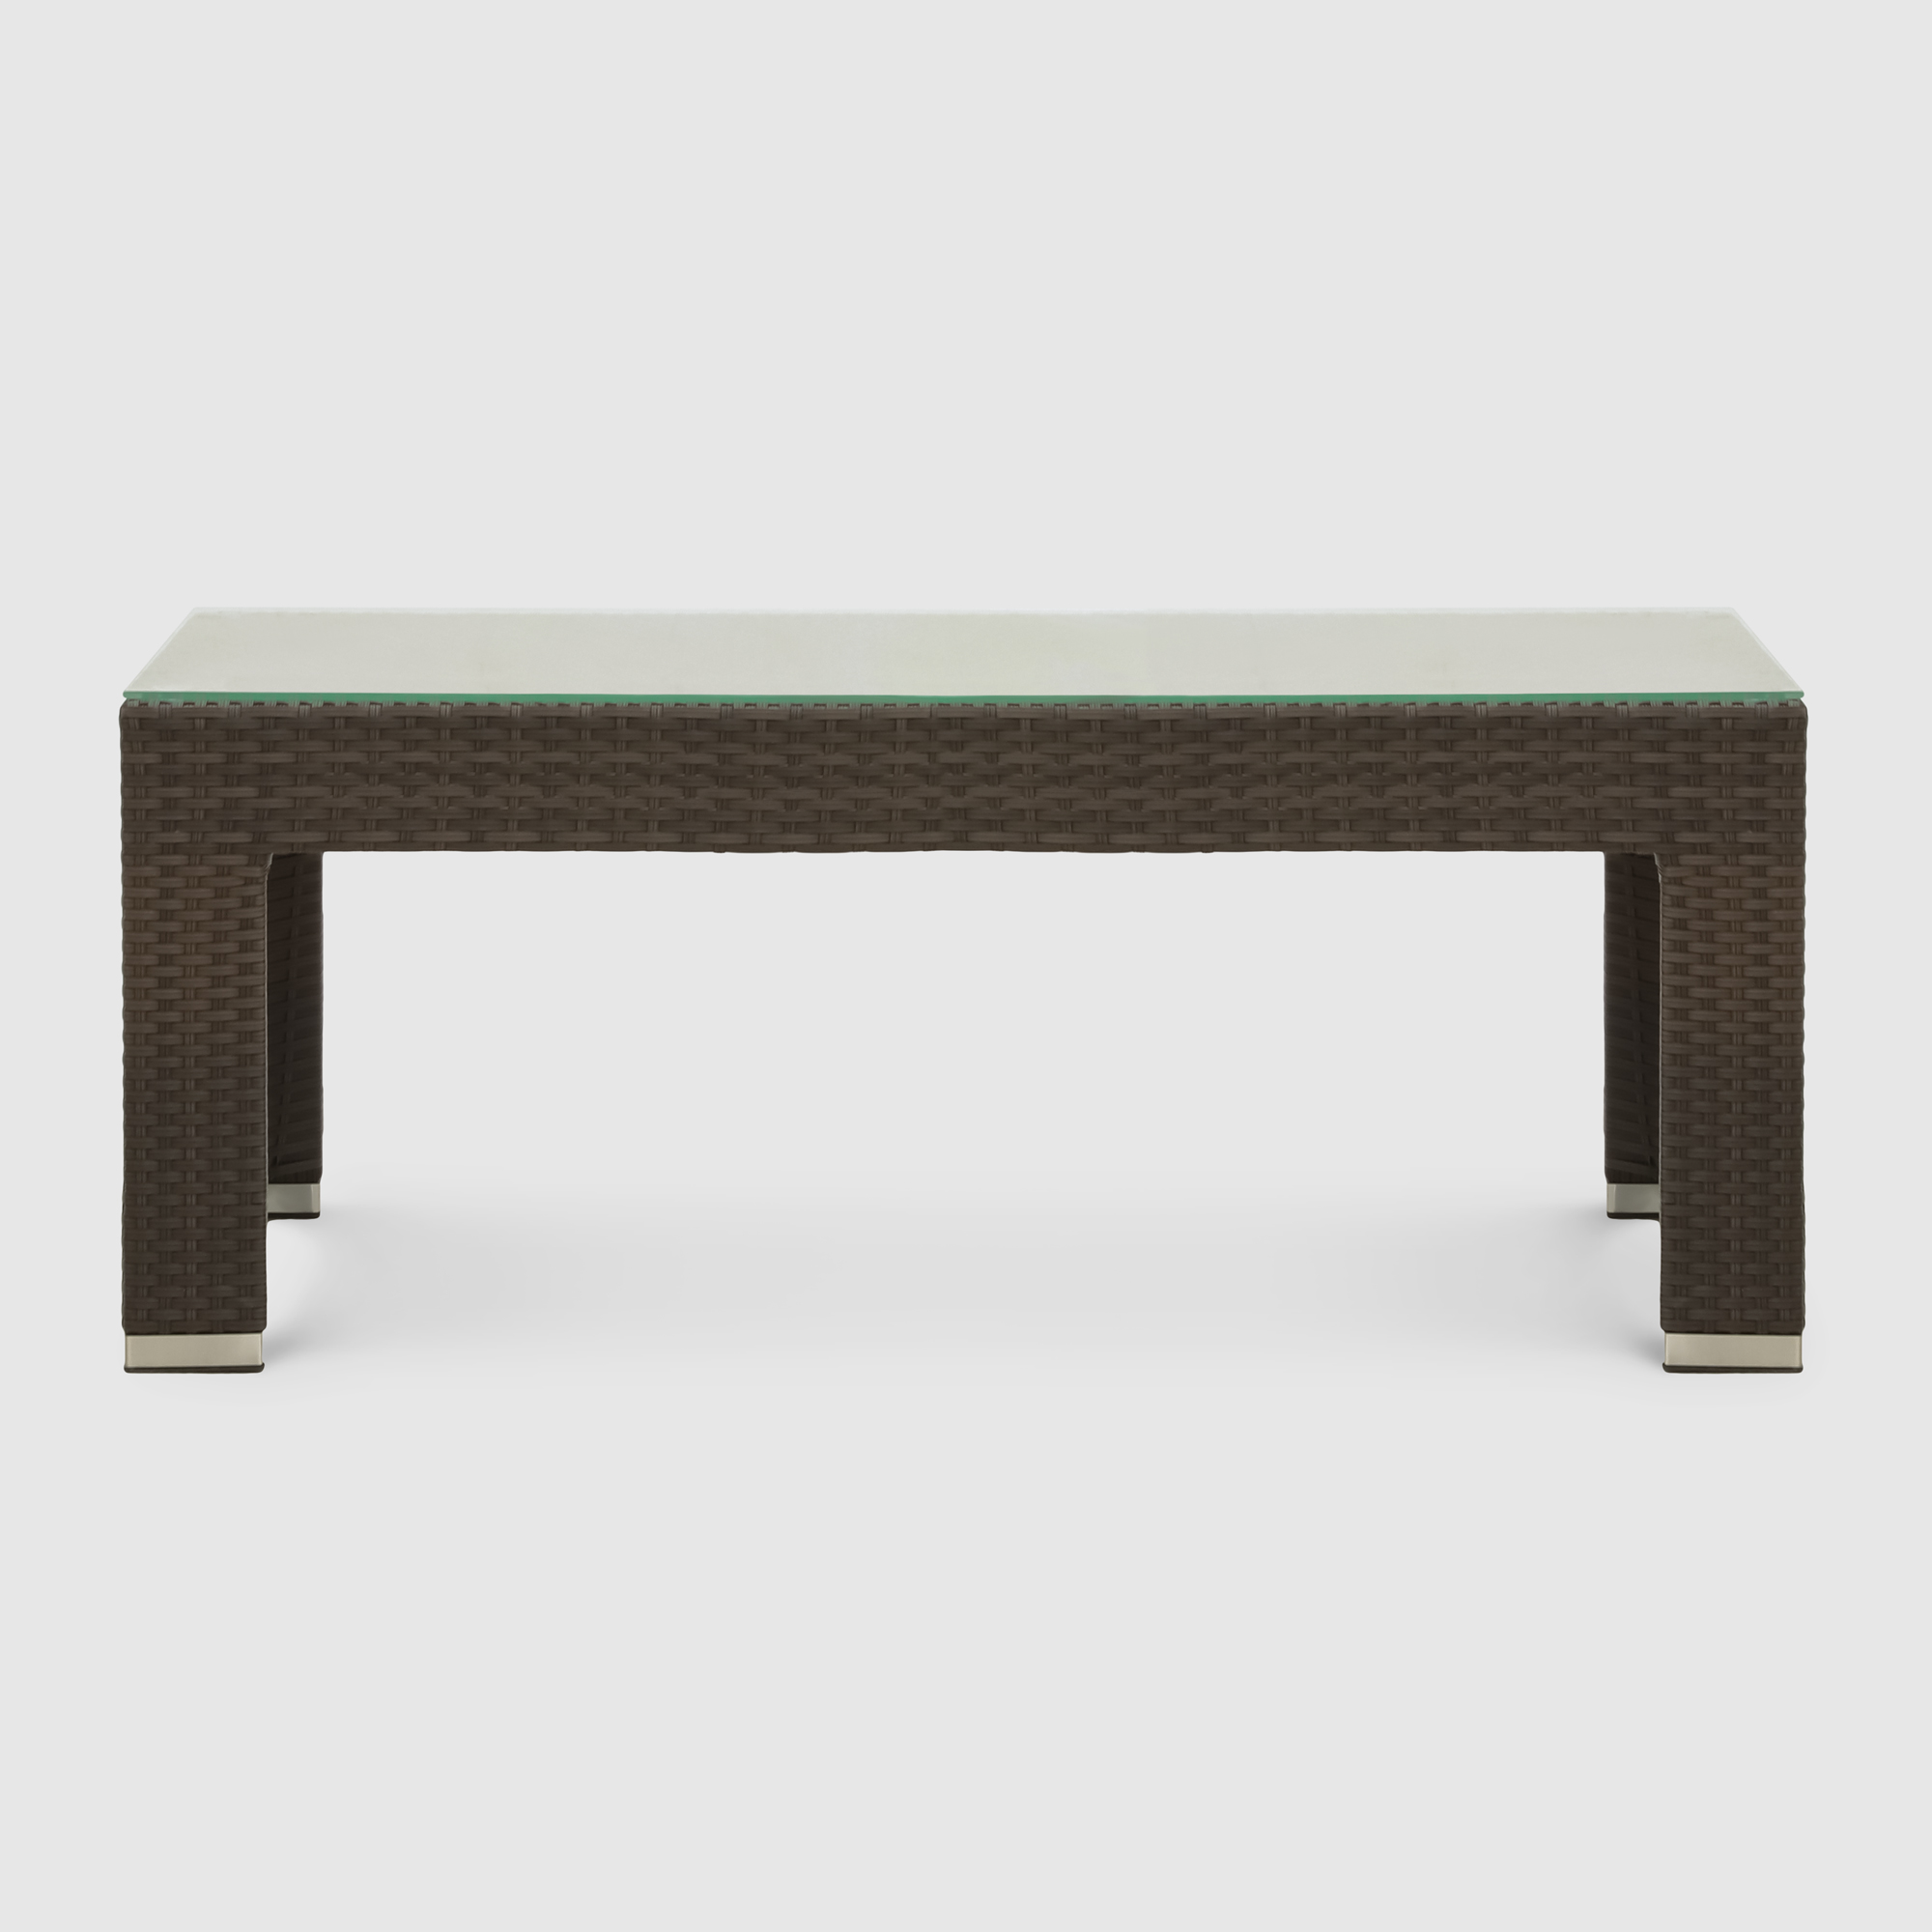 Комплект мебели Mavi rattan 4 предмета (041-036dky), цвет коричневый - фото 13